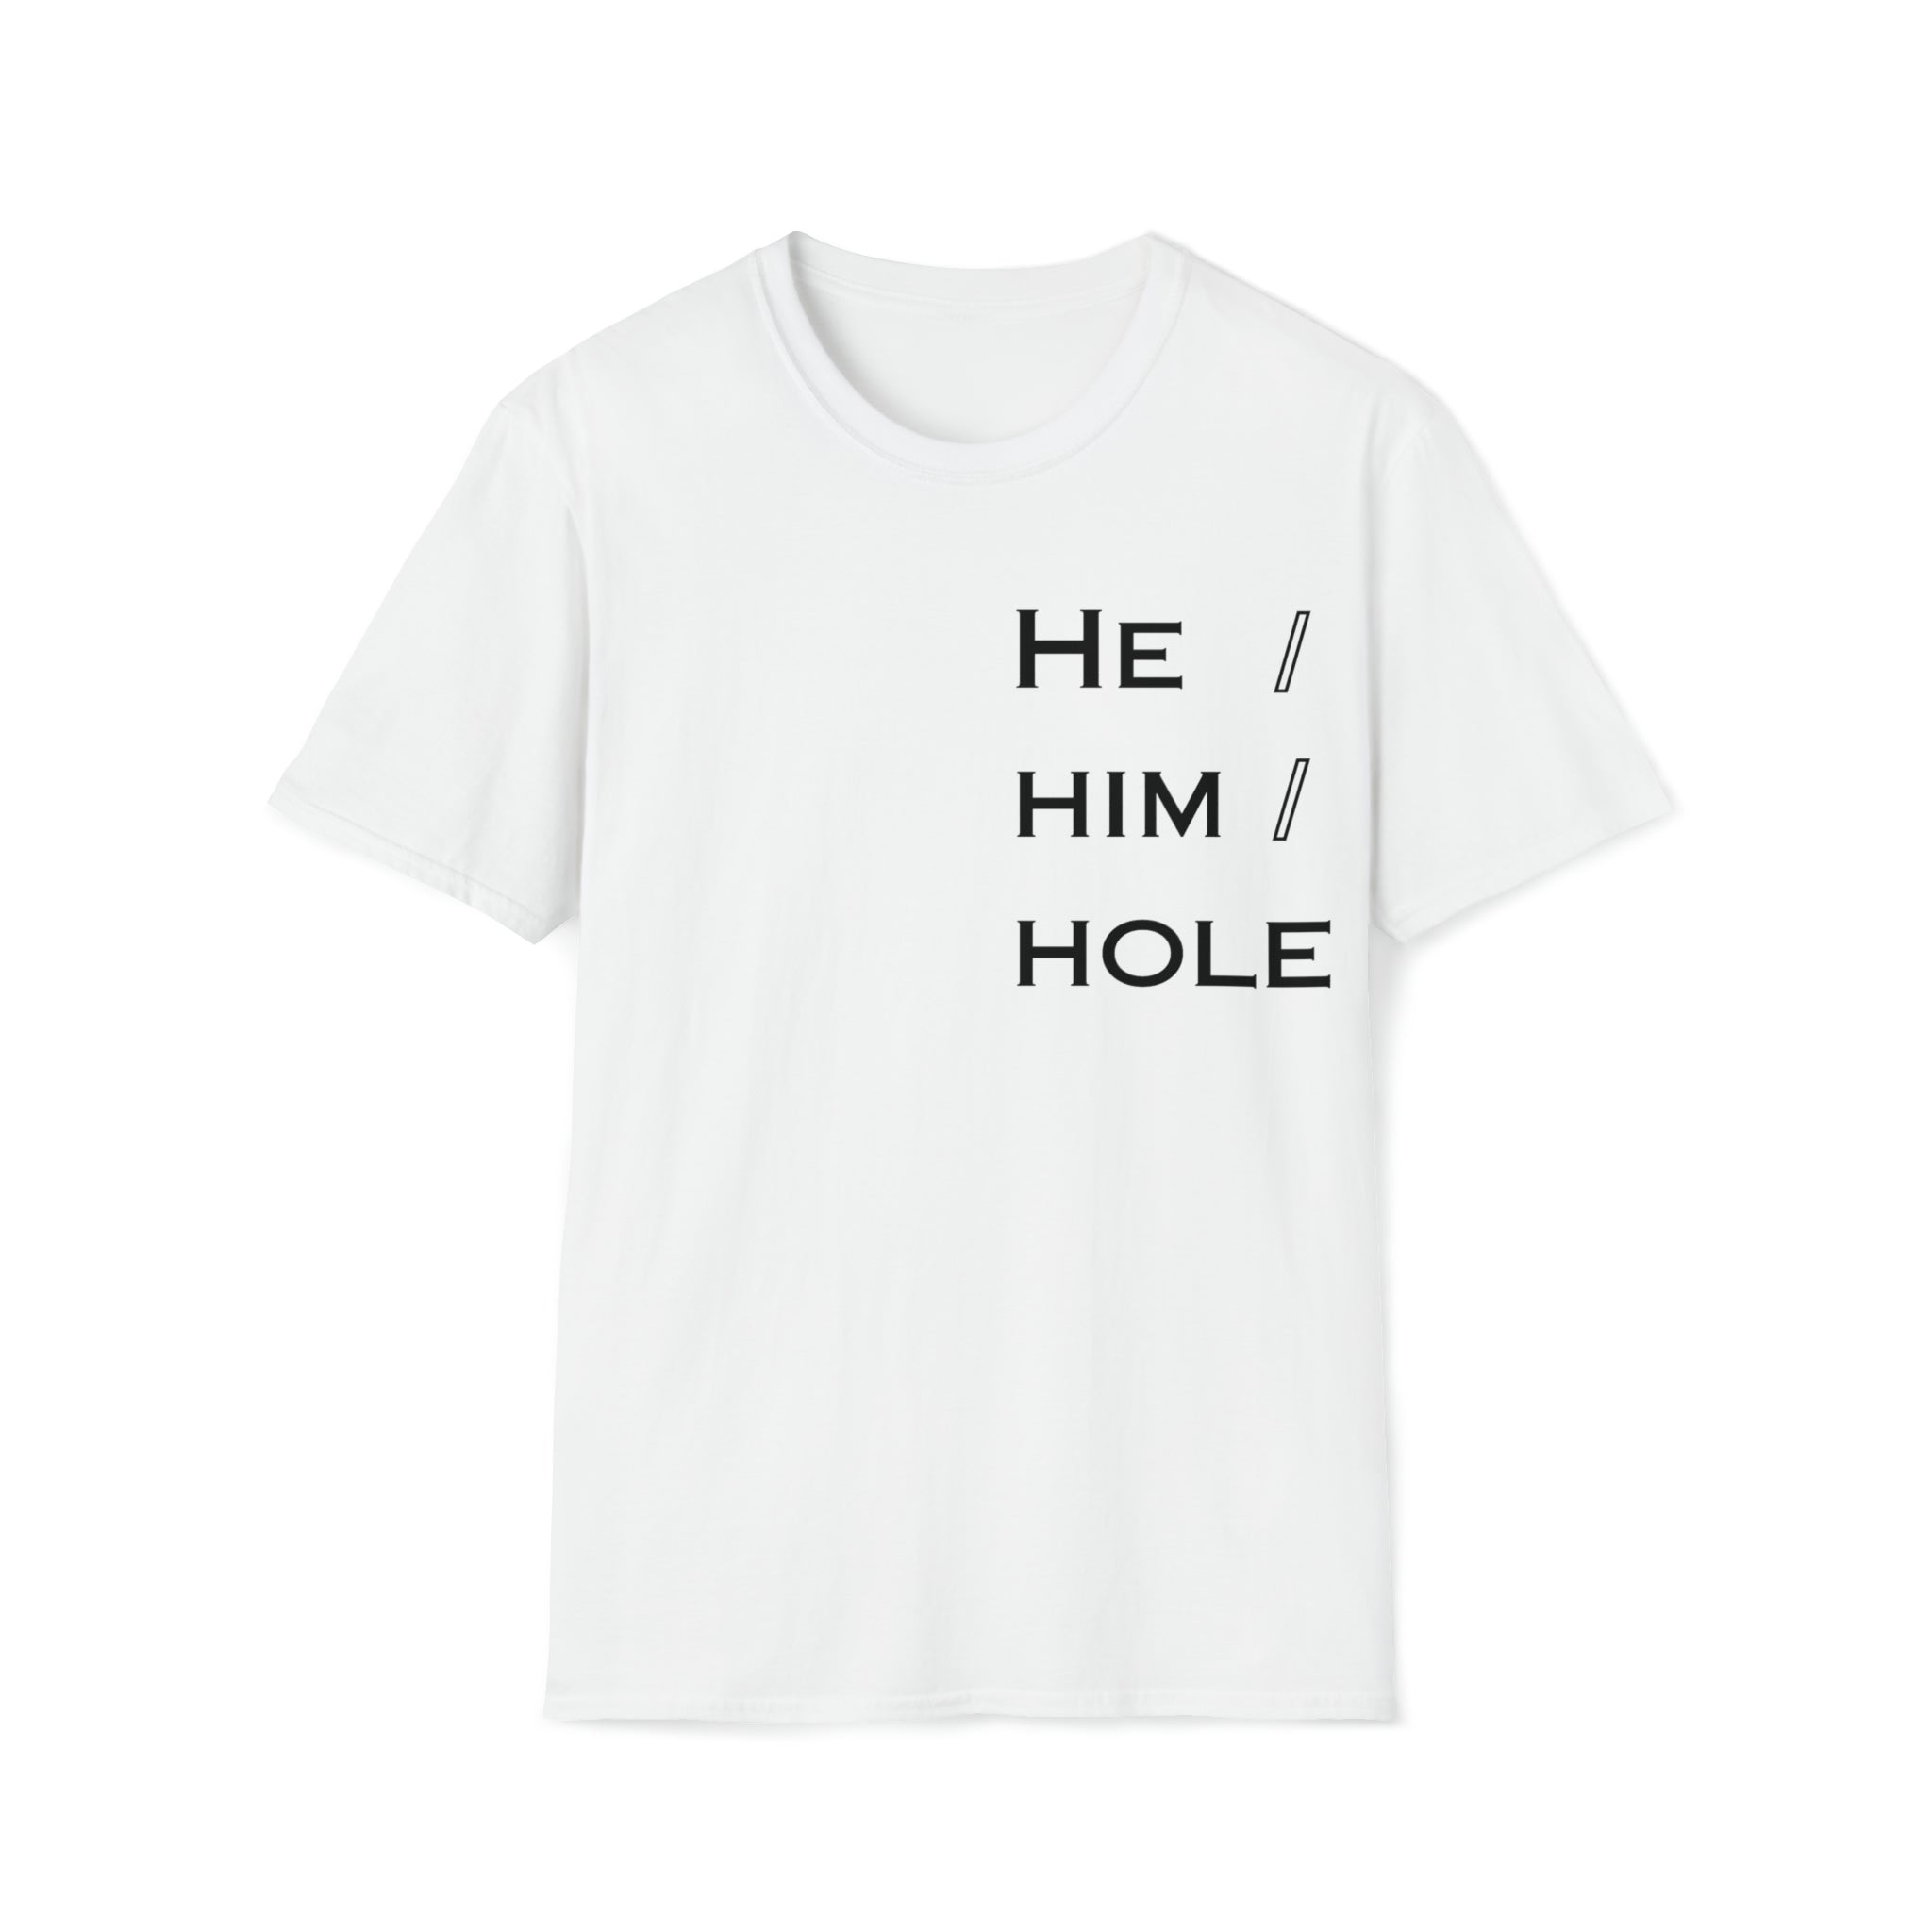 HE / HIM / HOLE - Tee